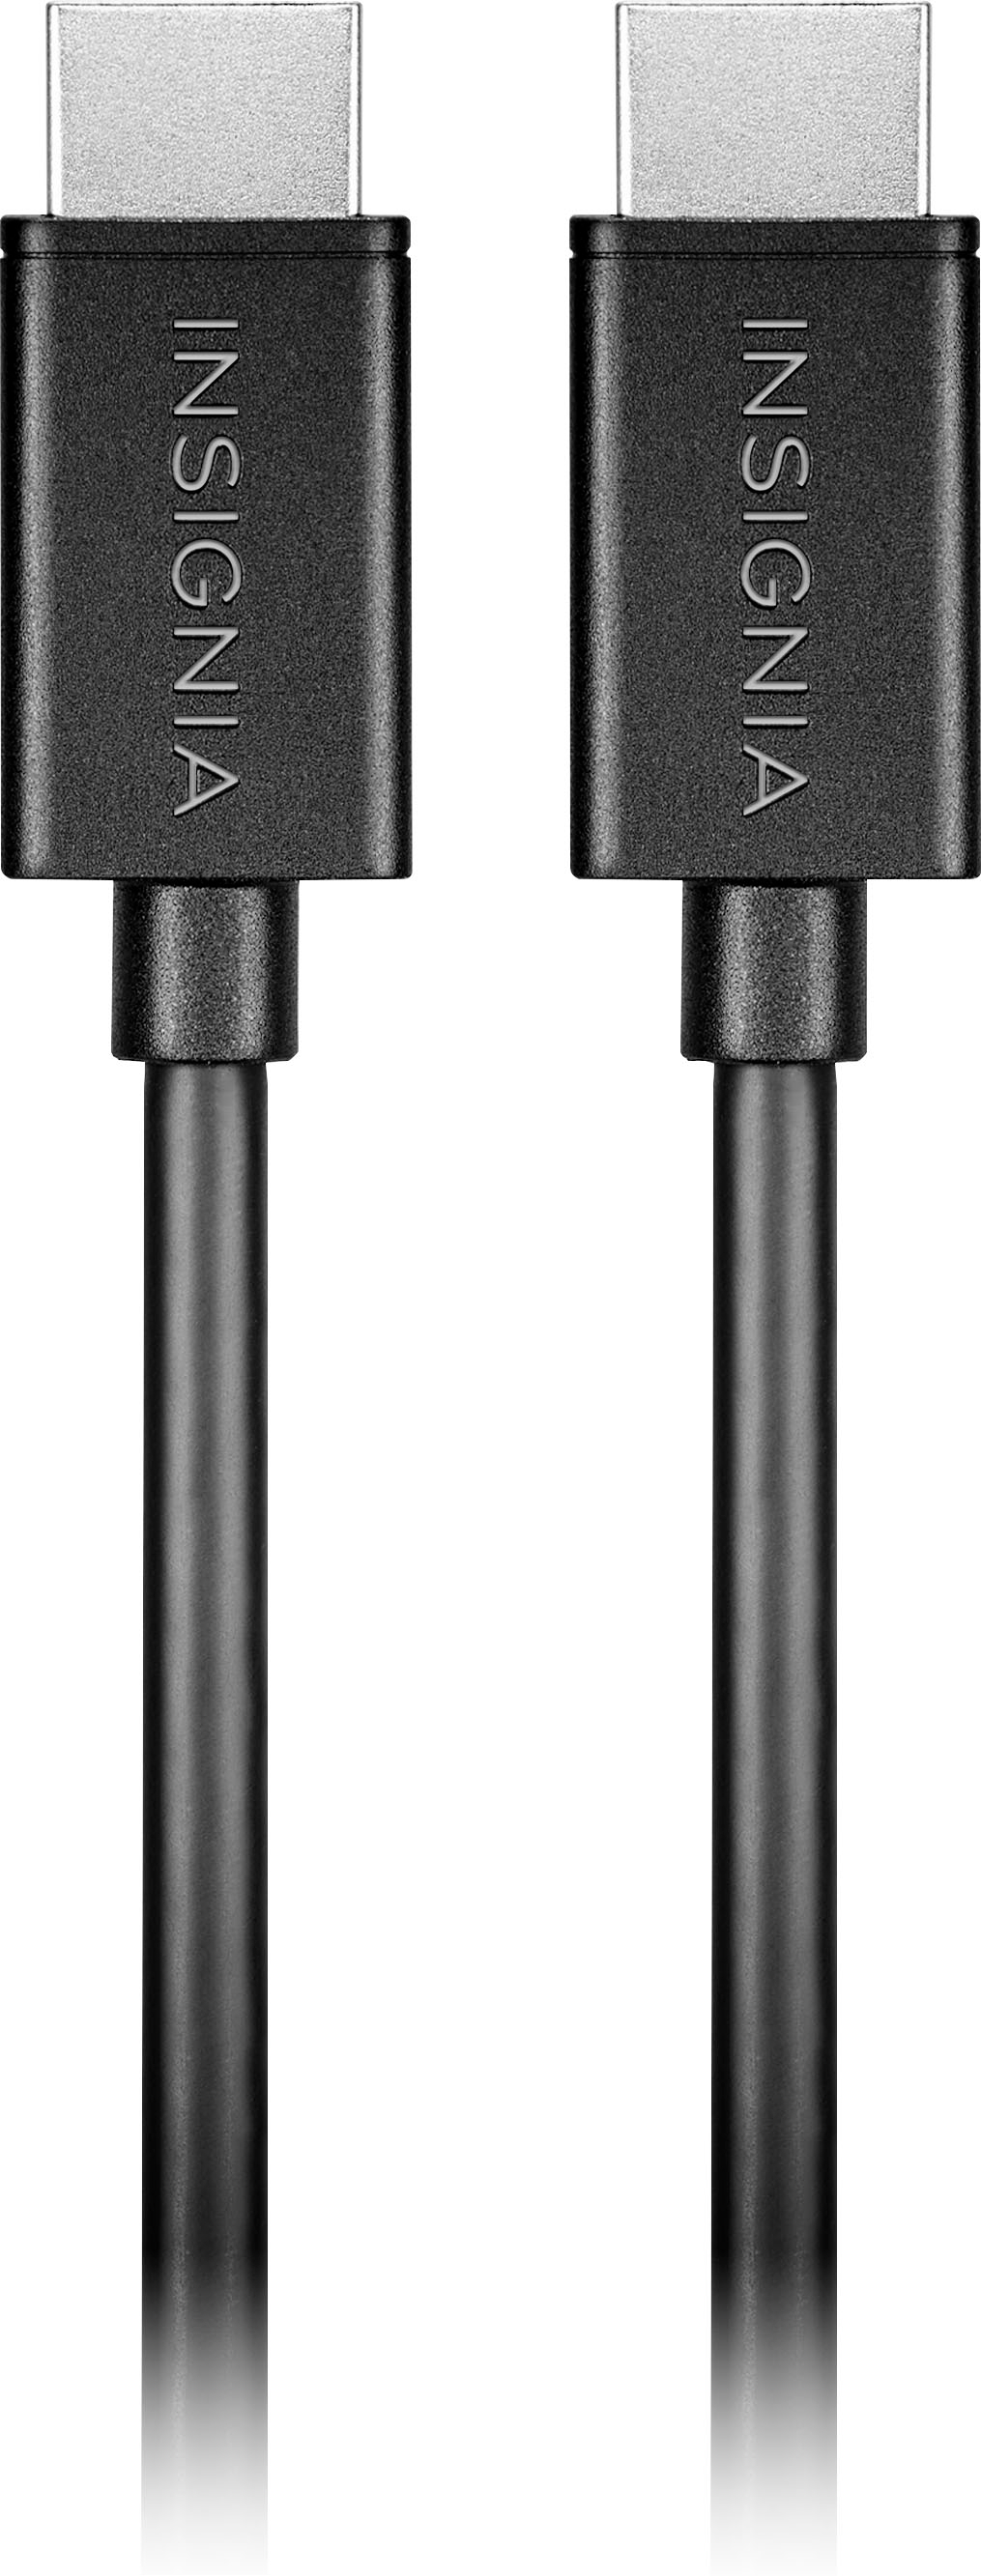 Insignia - 4' 4K Ultra HD HDMI Cable - Black